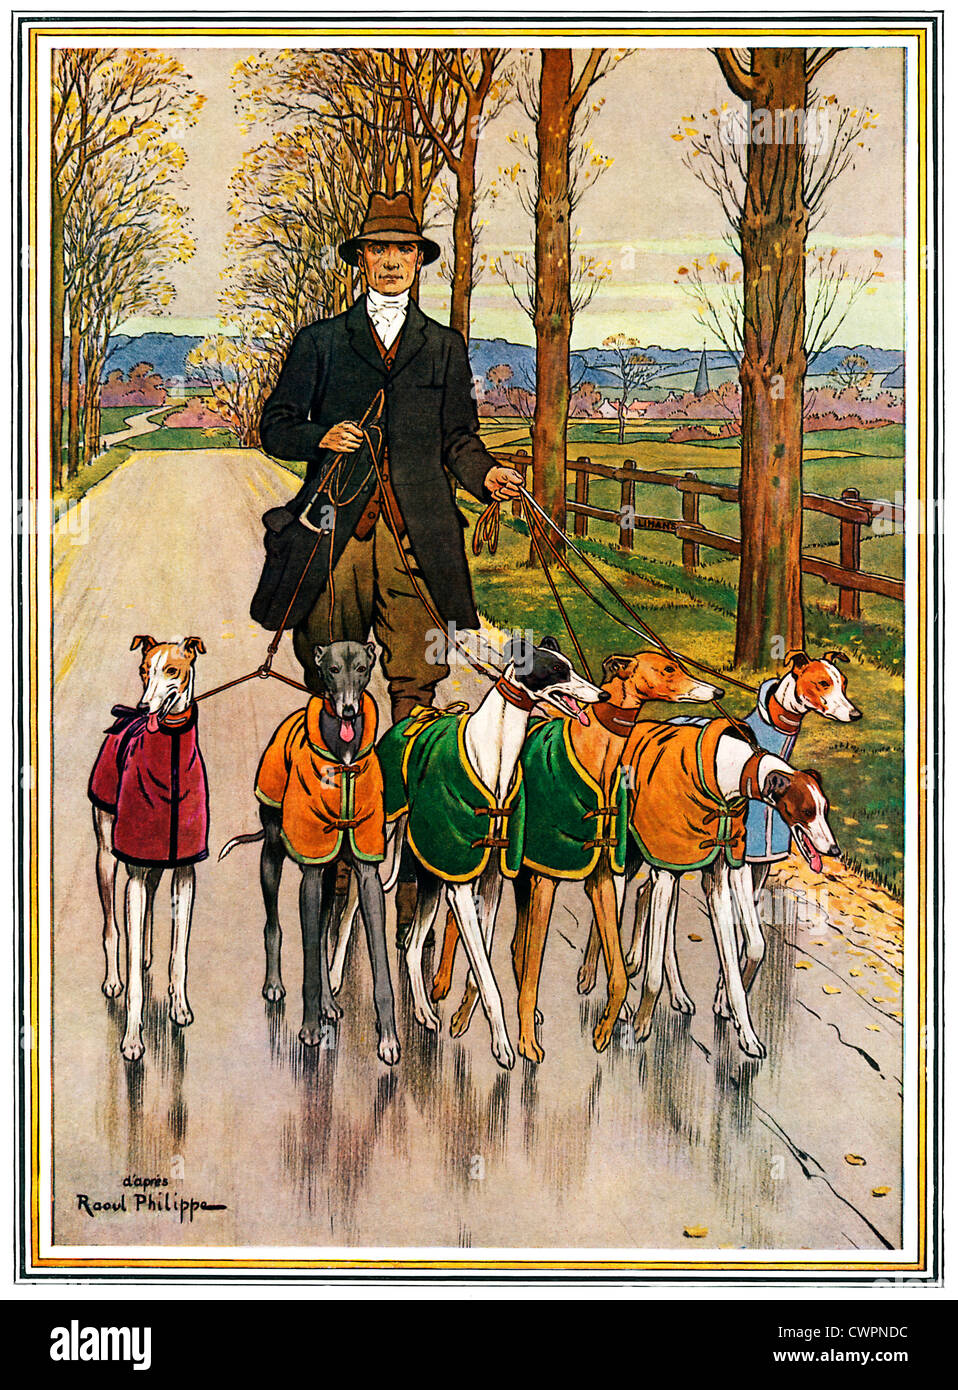 Lévriers lors de l'exercice, Edwardian illustration d'une collection prisée de lévriers, manteau, à marcher dans un chemin de campagne Banque D'Images